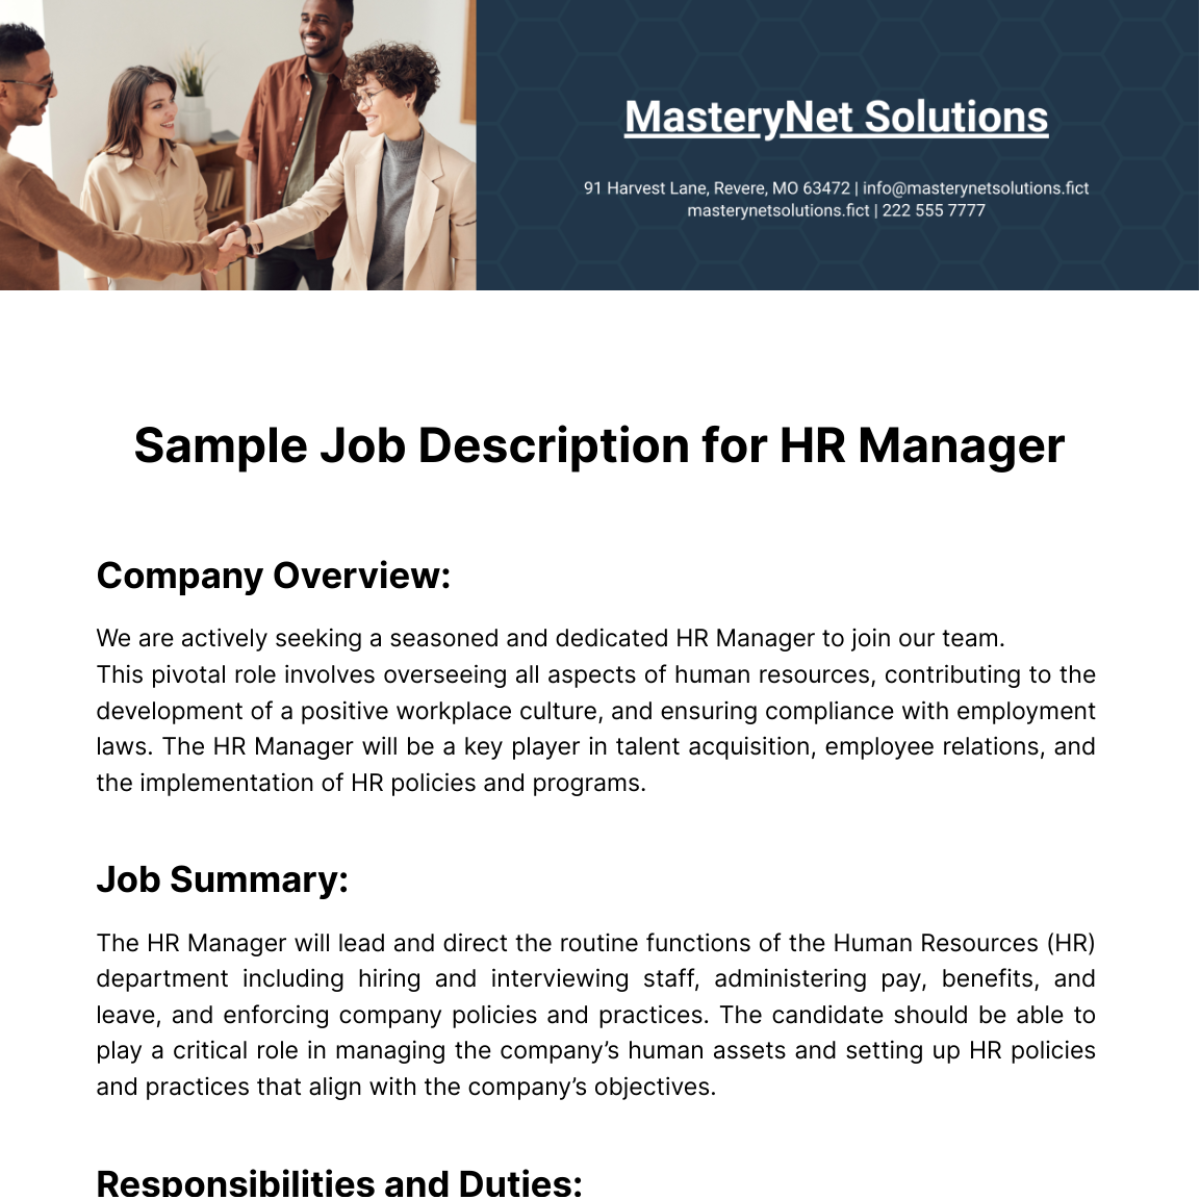 Sample Job Description for HR Manager Template